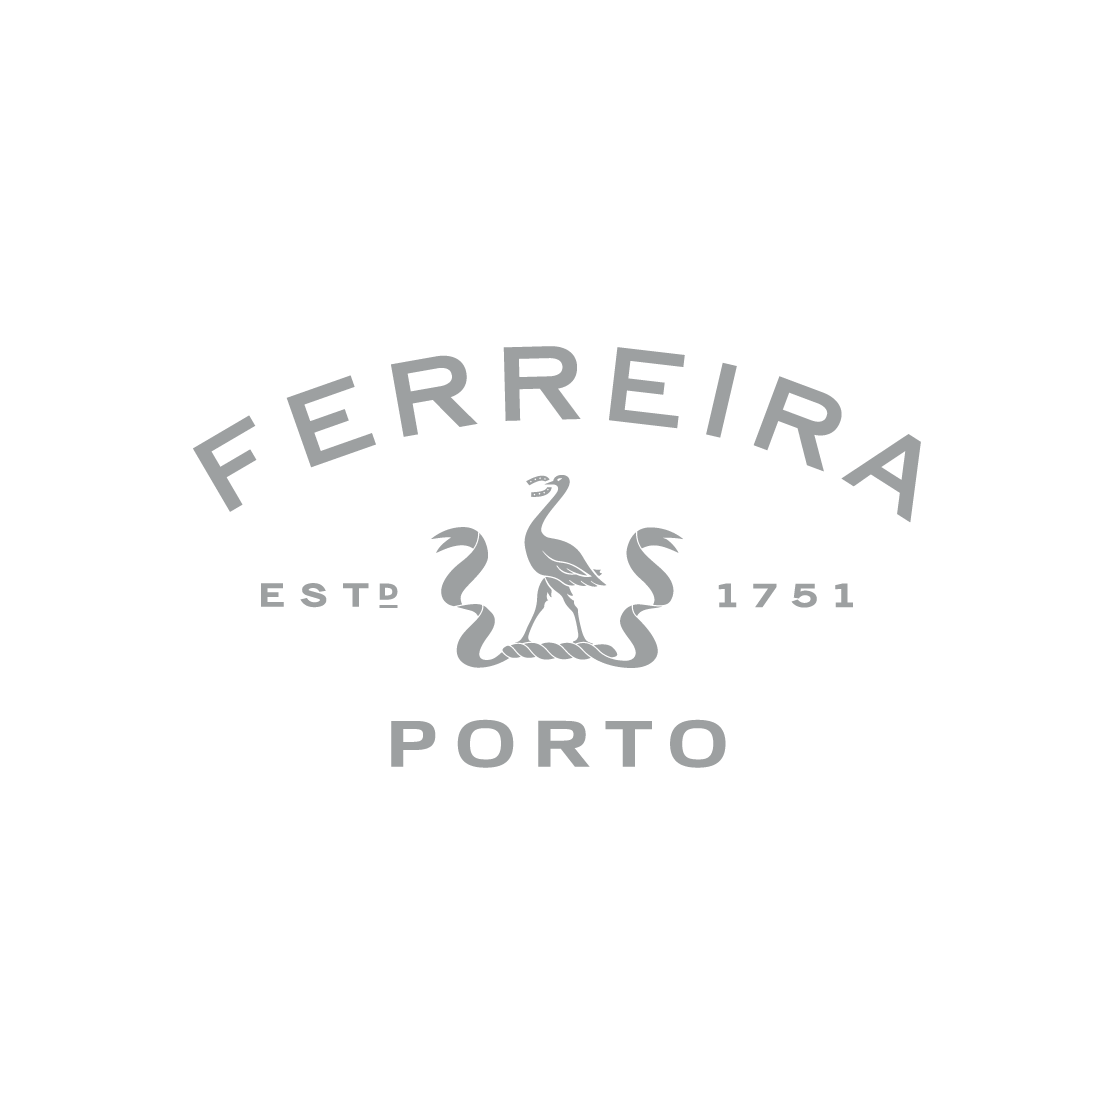 Porto Ferreira